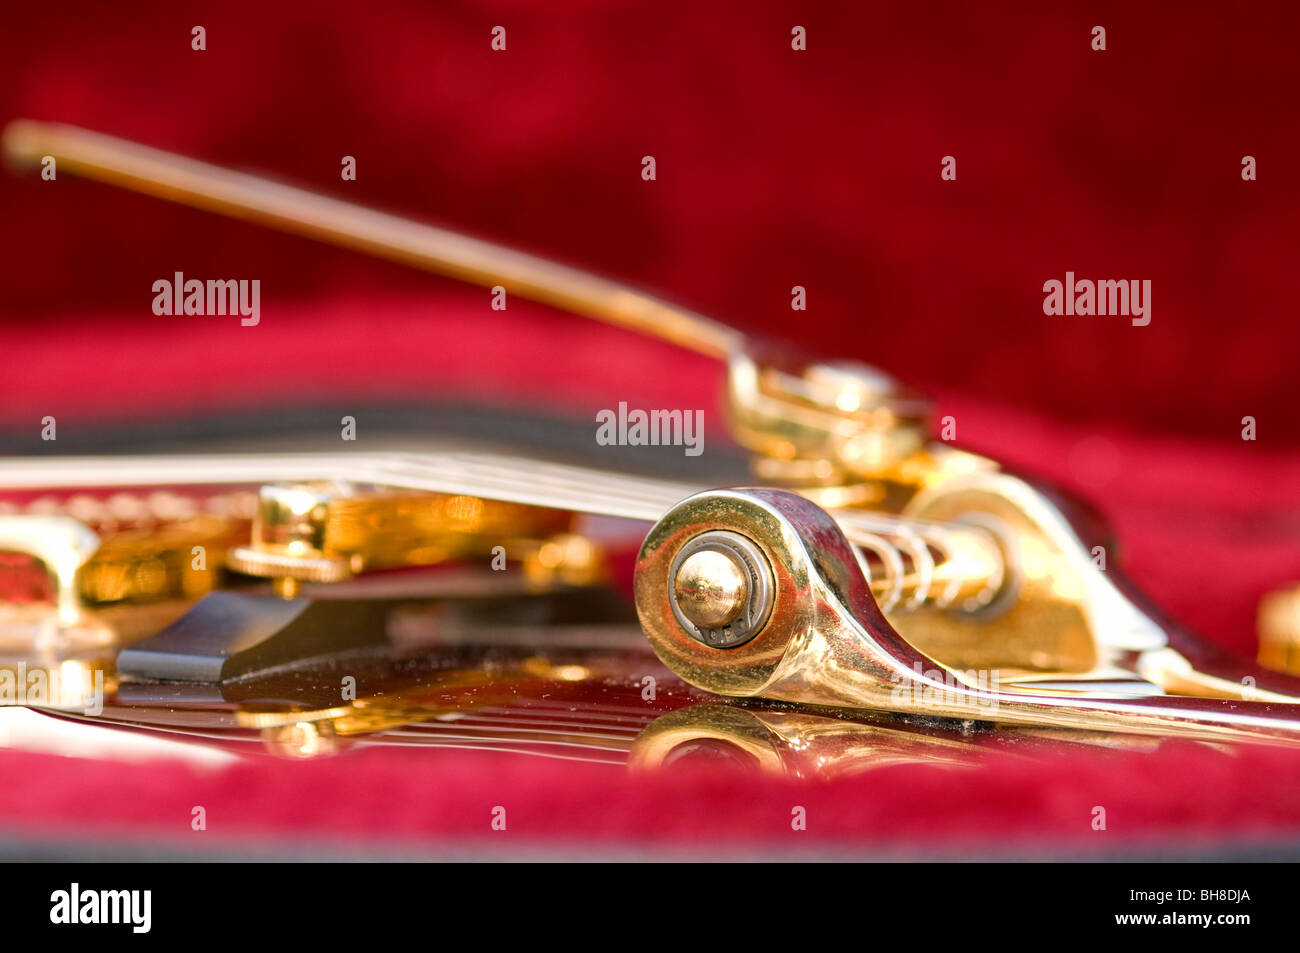 Close up dettaglio di una chitarra elettrica (Gretsch). Mostra anche il fissaggio del braccio del tremolo. Una profondità di campo limitata. Foto Stock